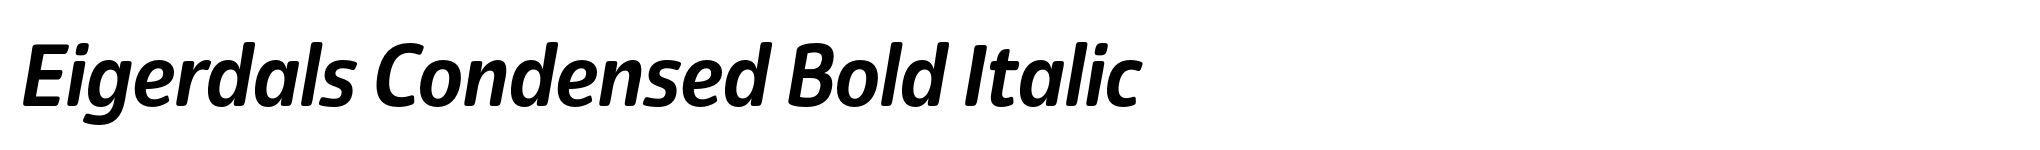 Eigerdals Condensed Bold Italic image